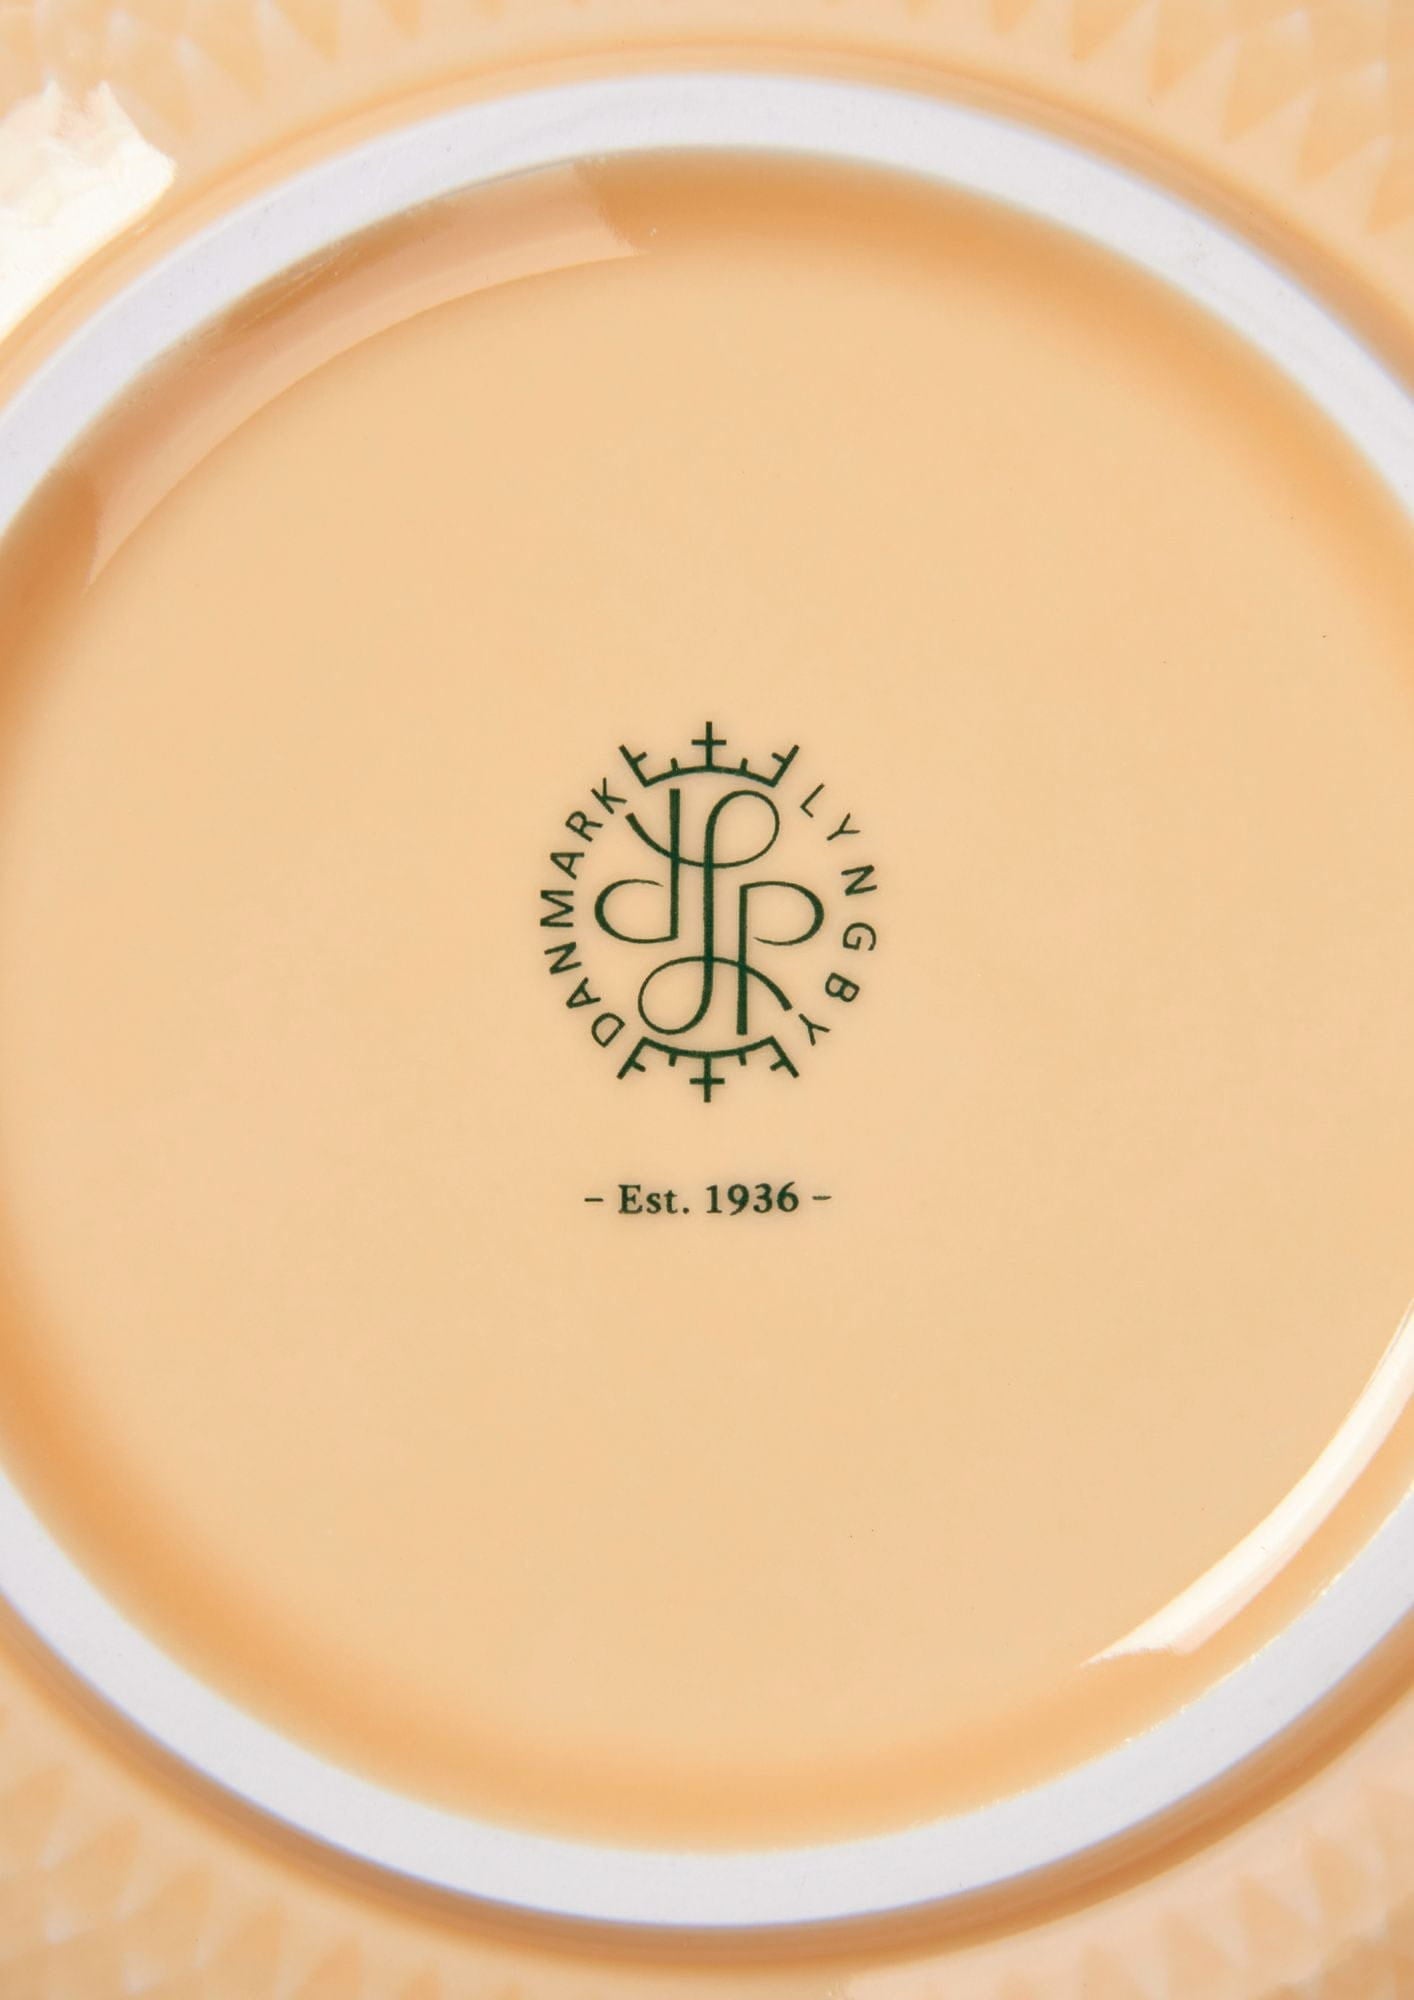 Lyngby Porcelæn Rhombe Color Bowl Ø15,5 cm, sand